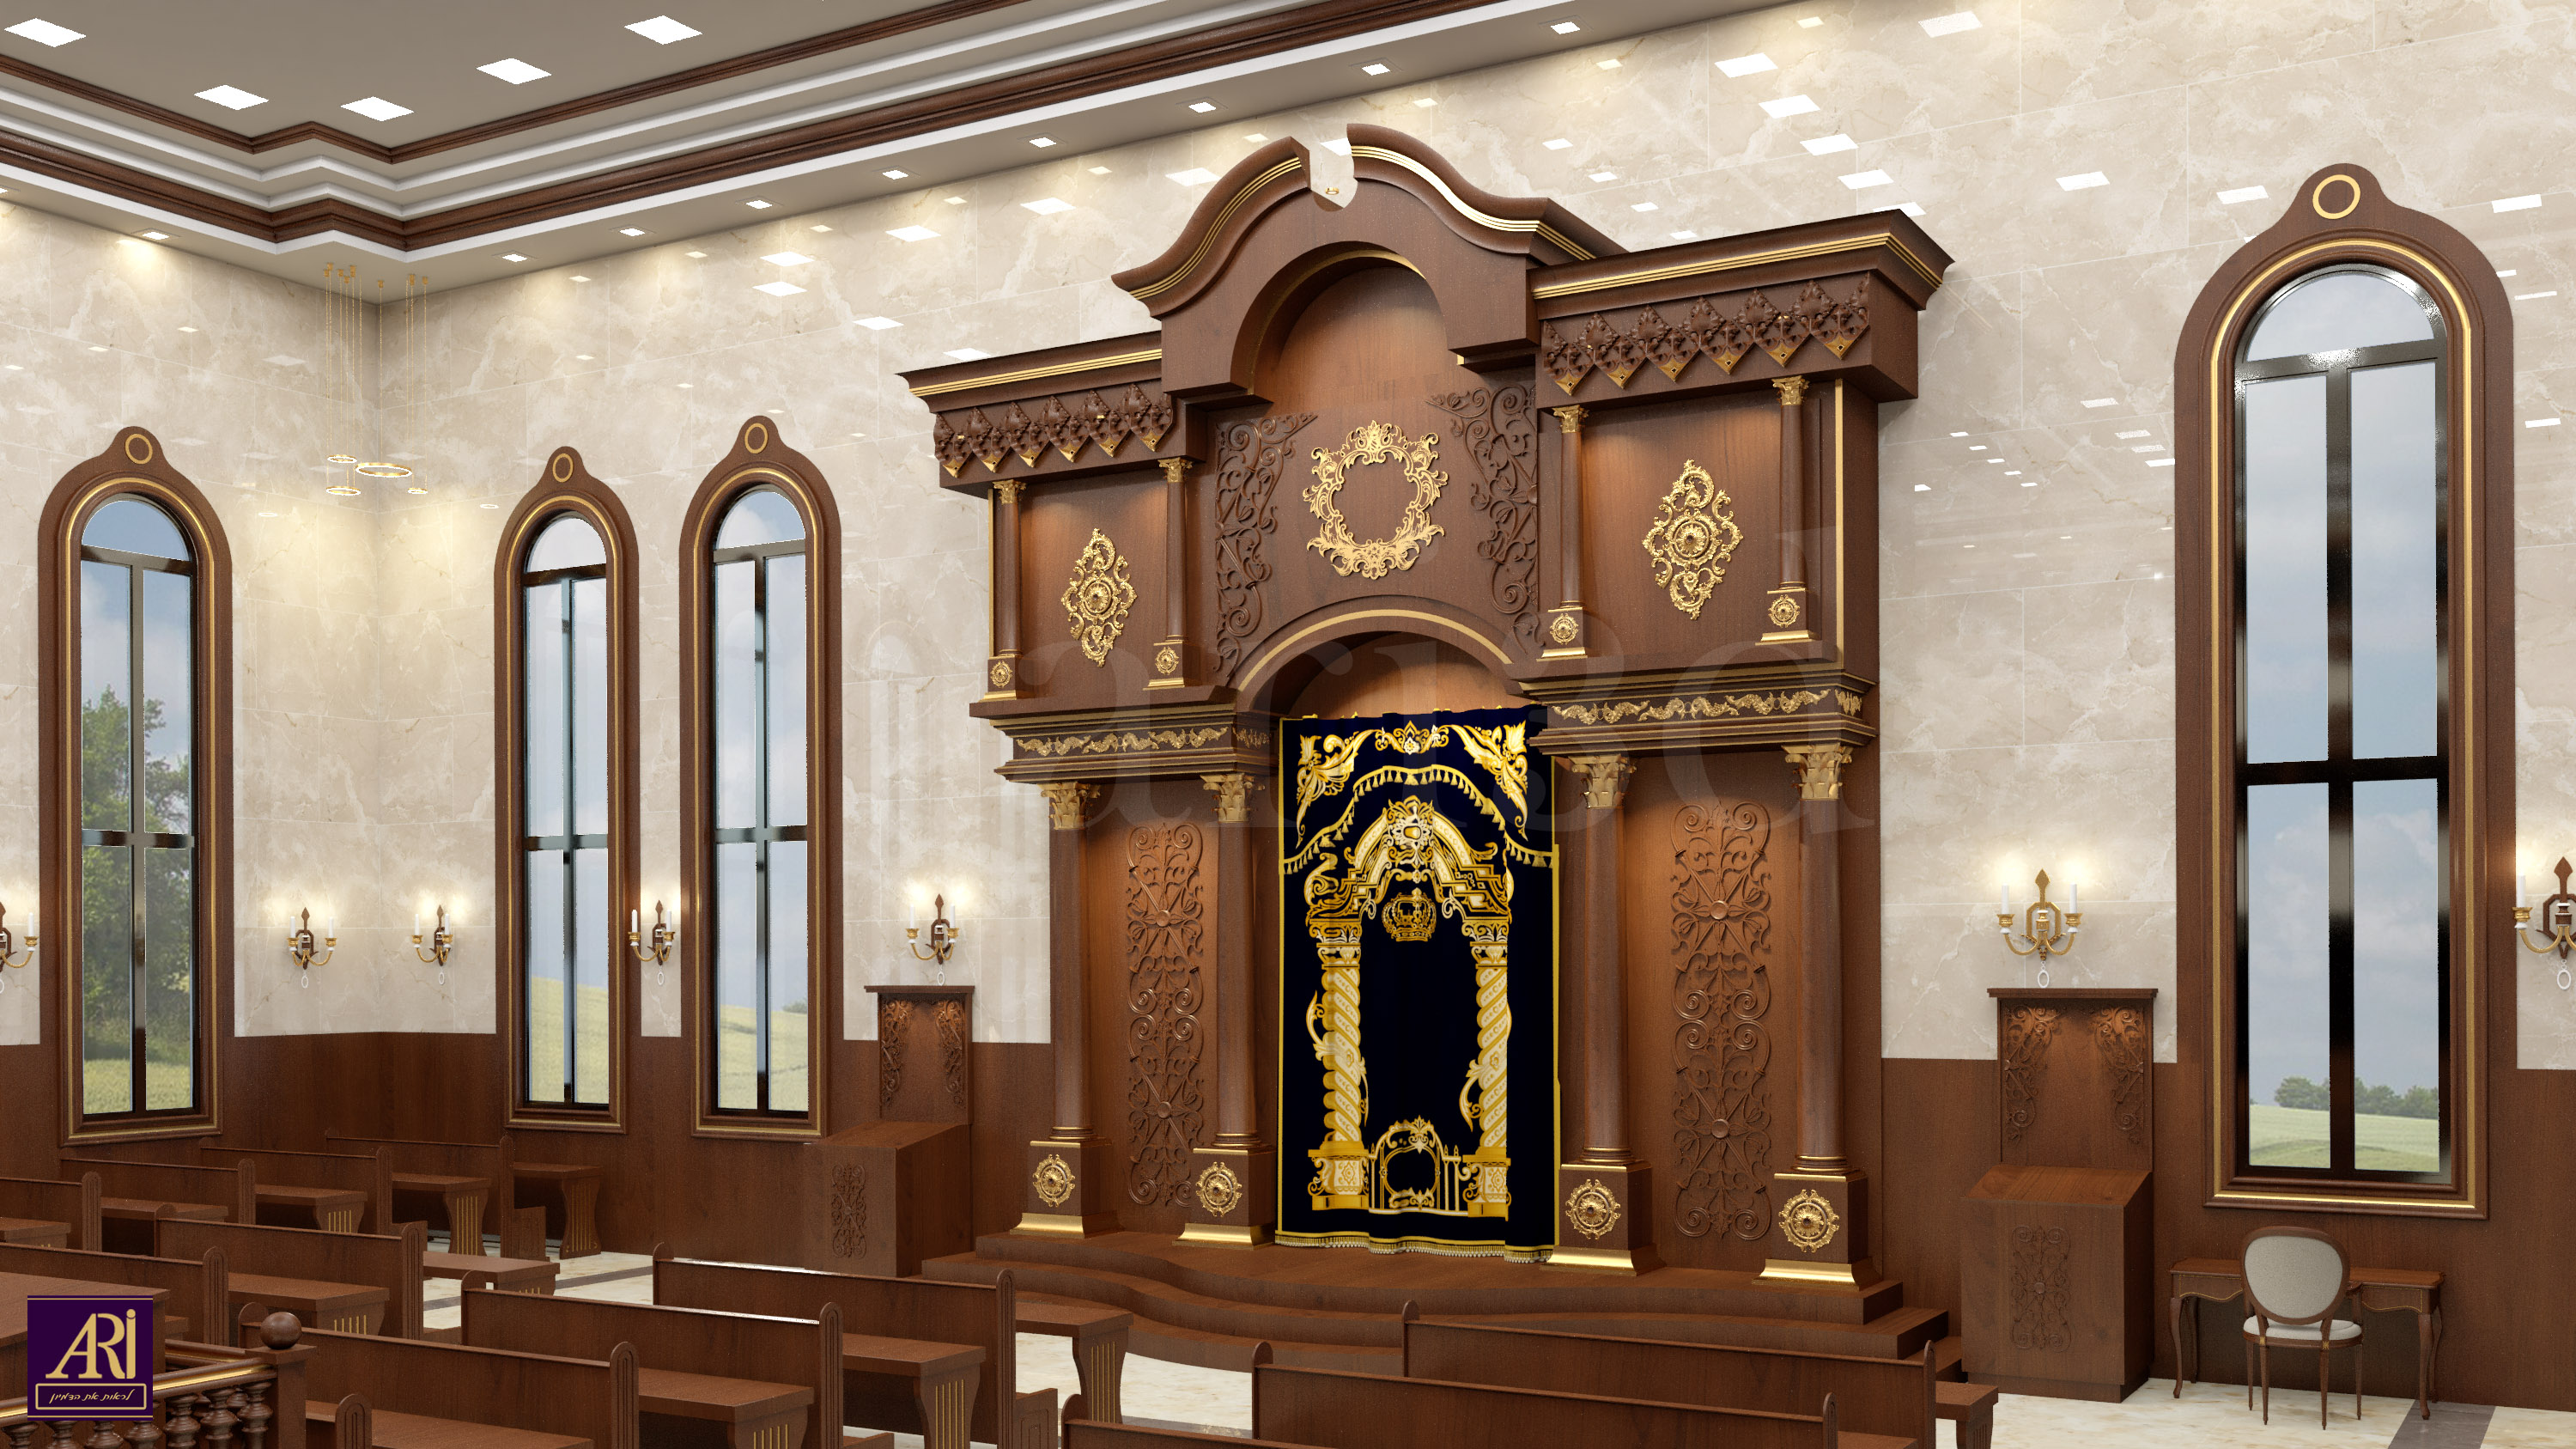 פנים בית הכנסת 2.JPG